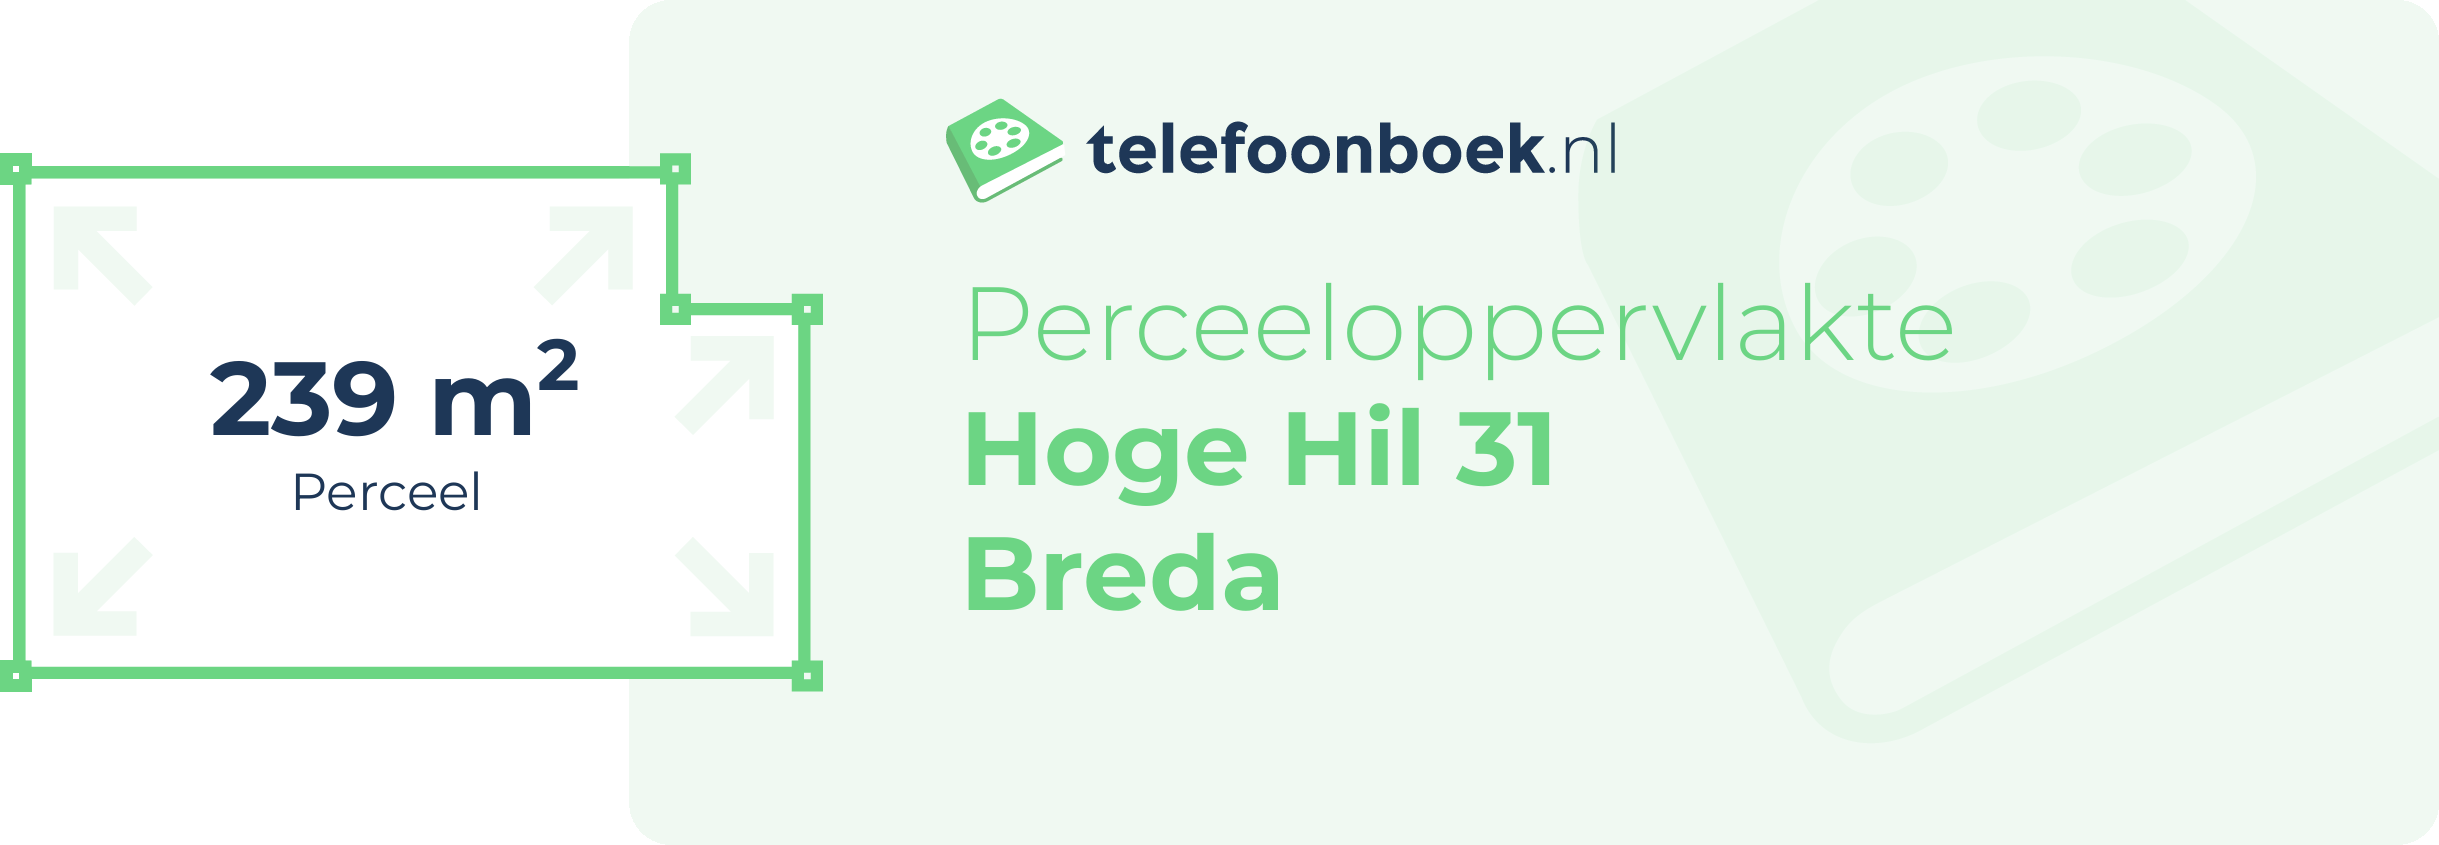 Perceeloppervlakte Hoge Hil 31 Breda